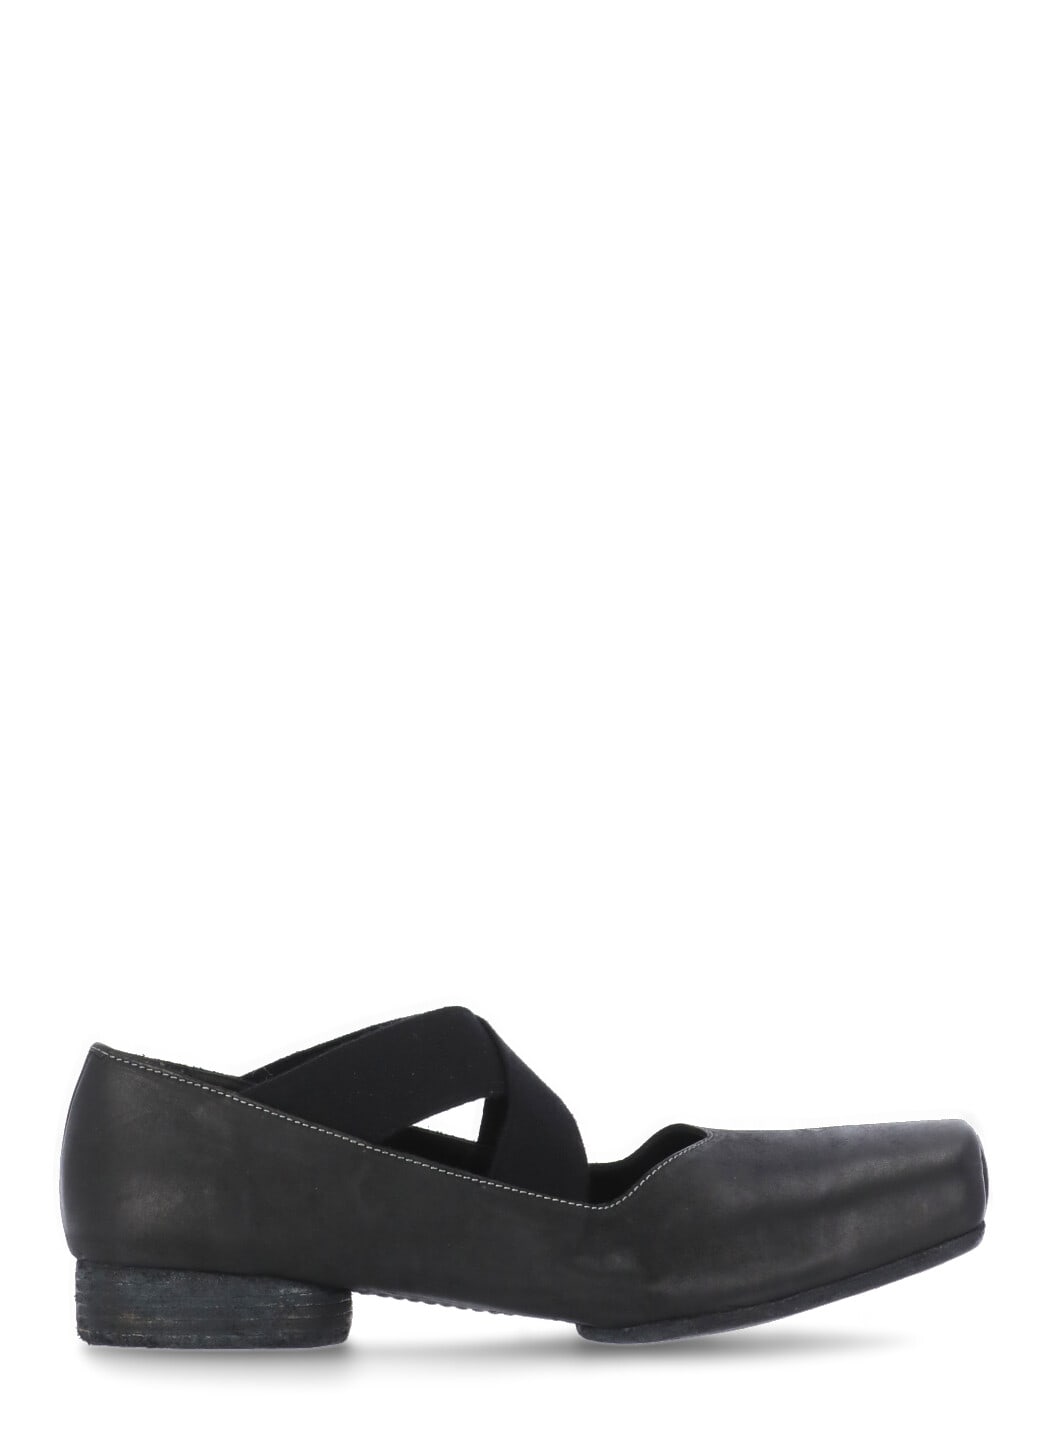 Buy Uma Wang Leather Flat Shoe online, shop Uma Wang shoes with free shipping